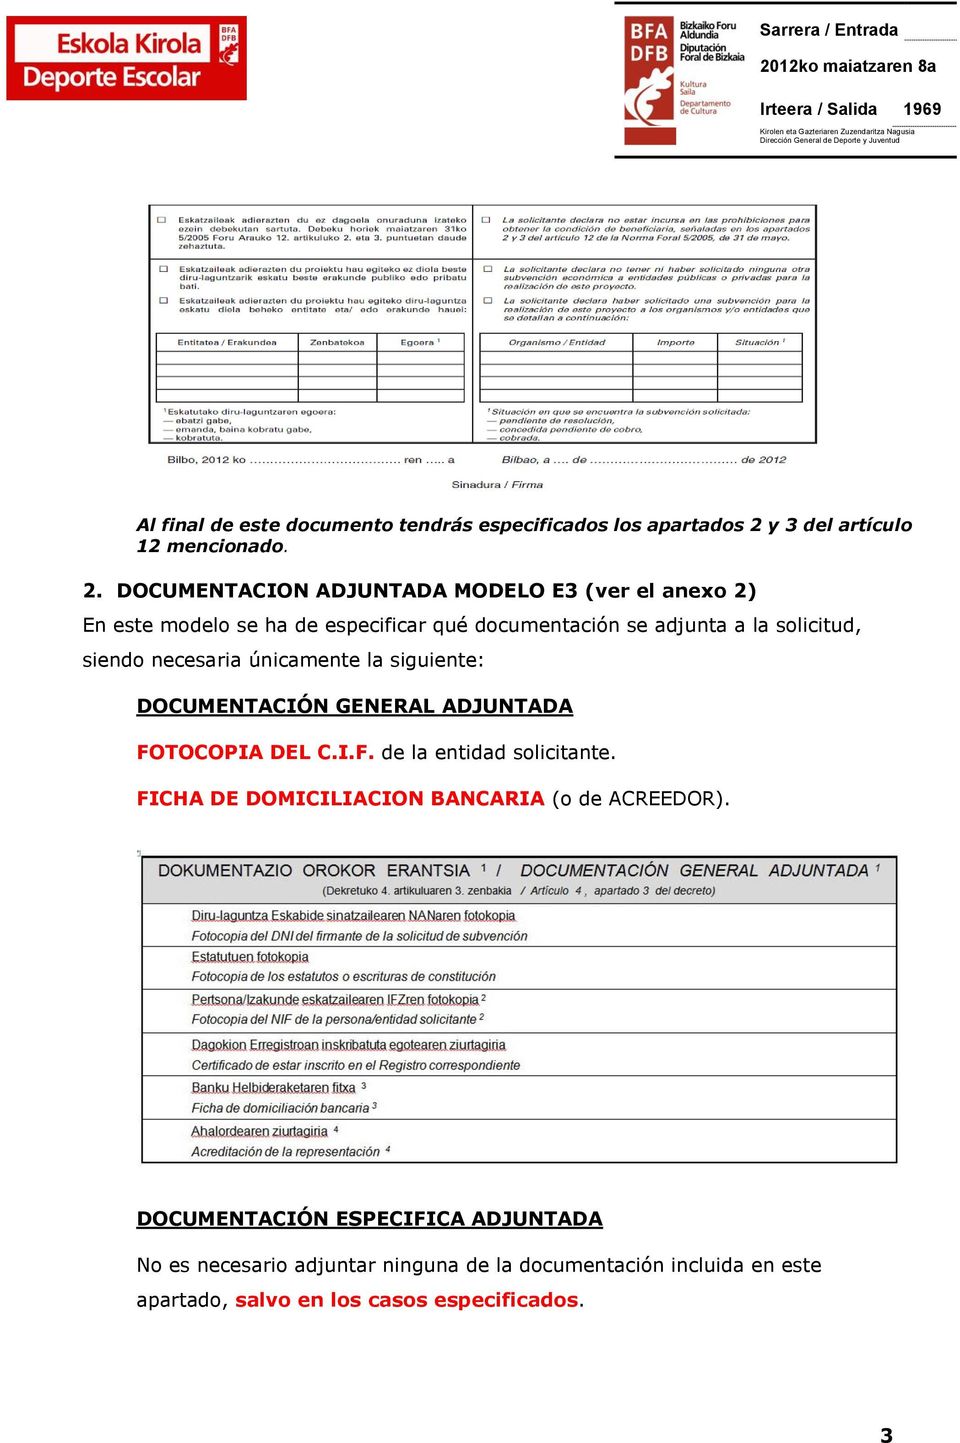 DOCUMENTACION ADJUNTADA MODELO E3 (ver el anexo 2) En este modelo se ha de especificar qué documentación se adjunta a la solicitud, siendo